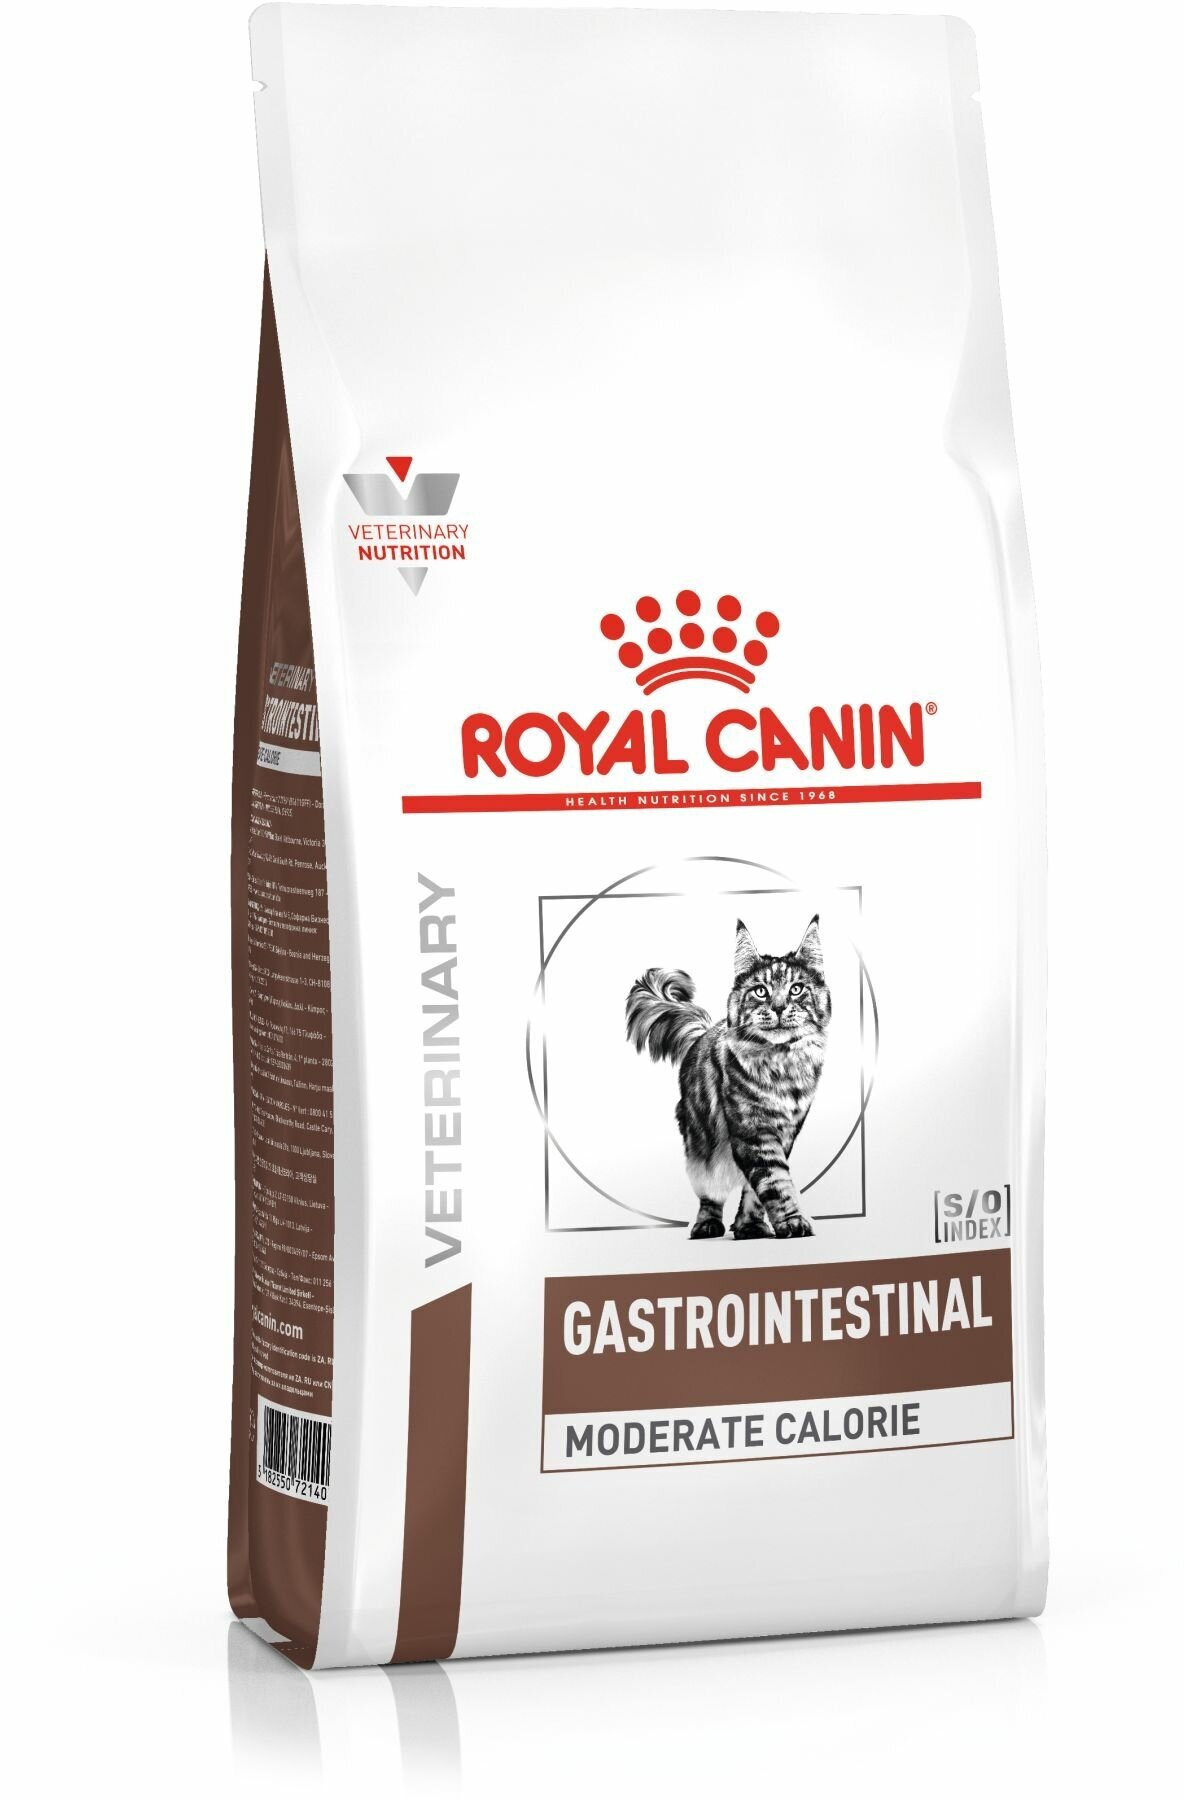 ROYAL CANIN VD GASTRO INTESTINAL MODERATE CALORIE GIM35 400 г для кошек с пониженным содержанием жира, при воспалении кишечника, 3шт